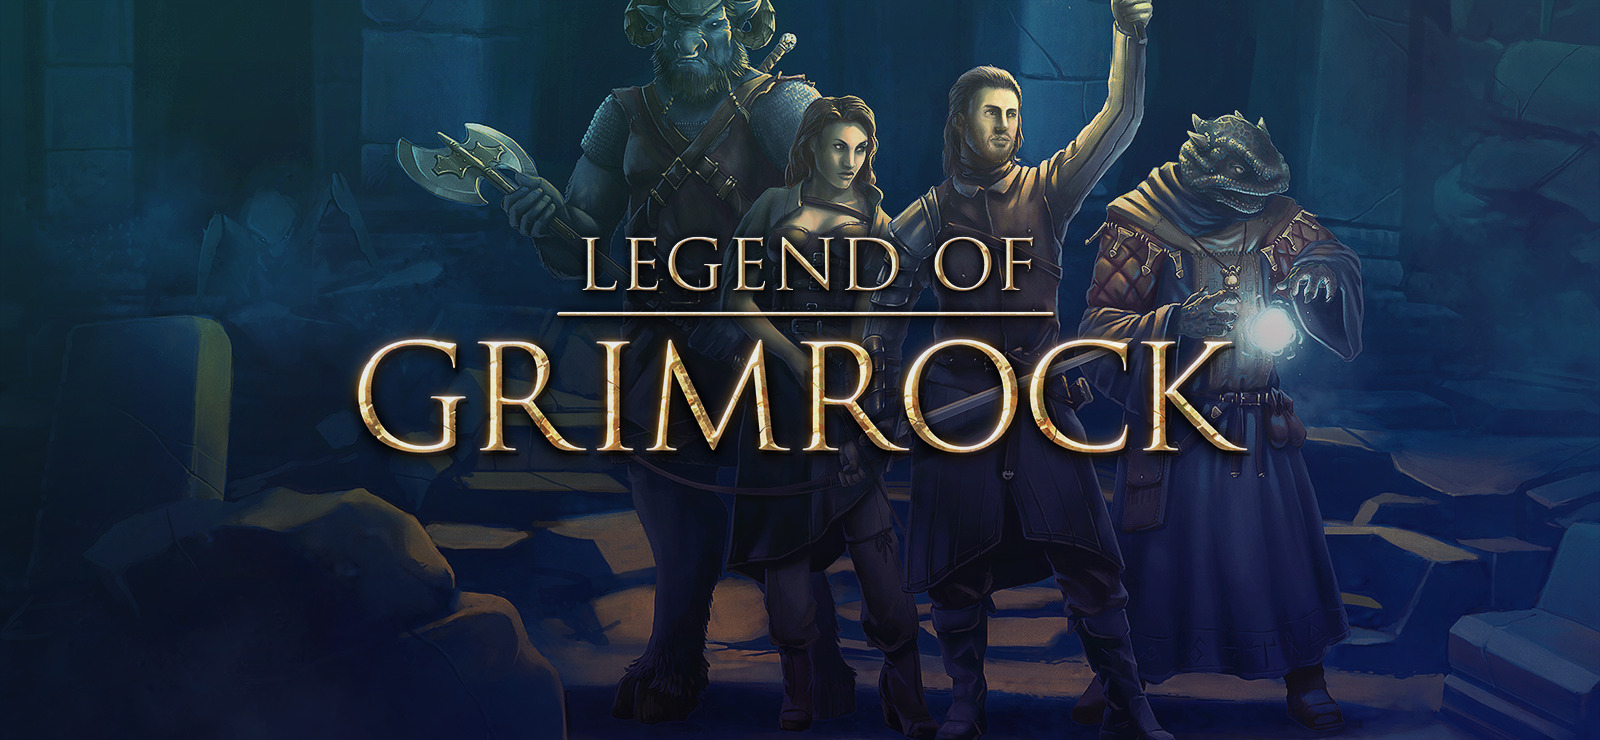 Legend Of Grimrock On Gog Com